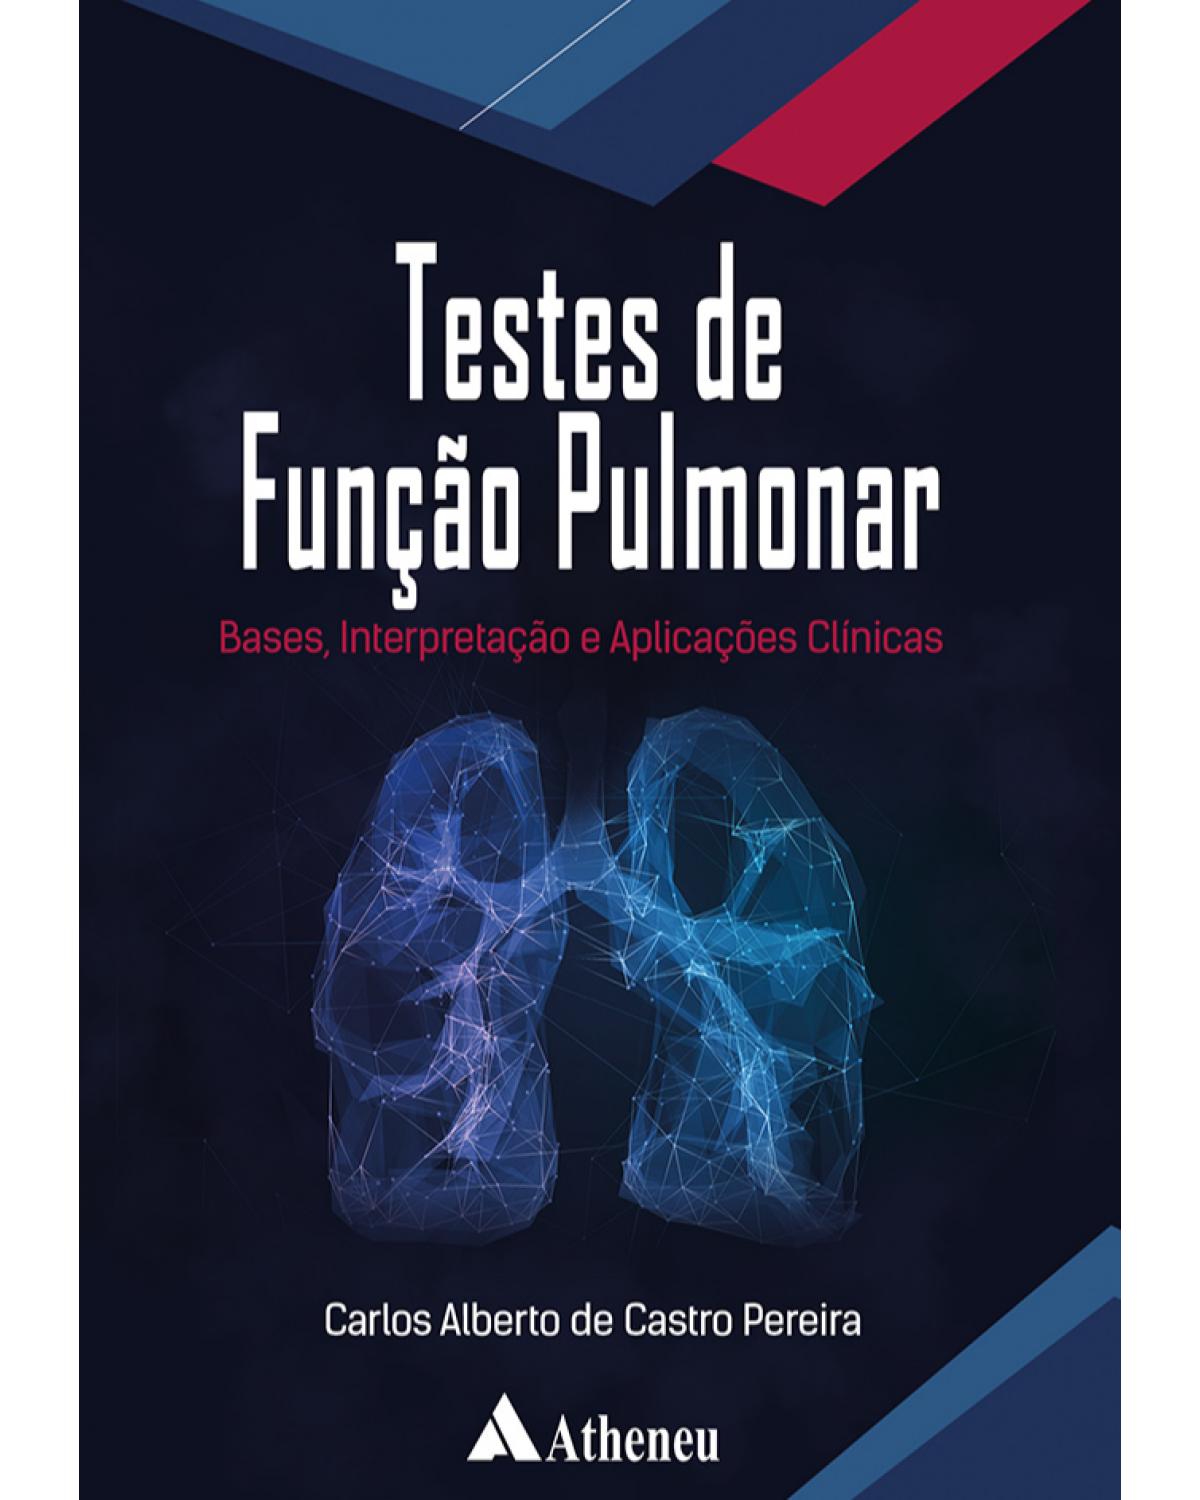 Testes de função pulmonar - bases, interpretação e aplicações clínicas - 1ª Edição | 2021